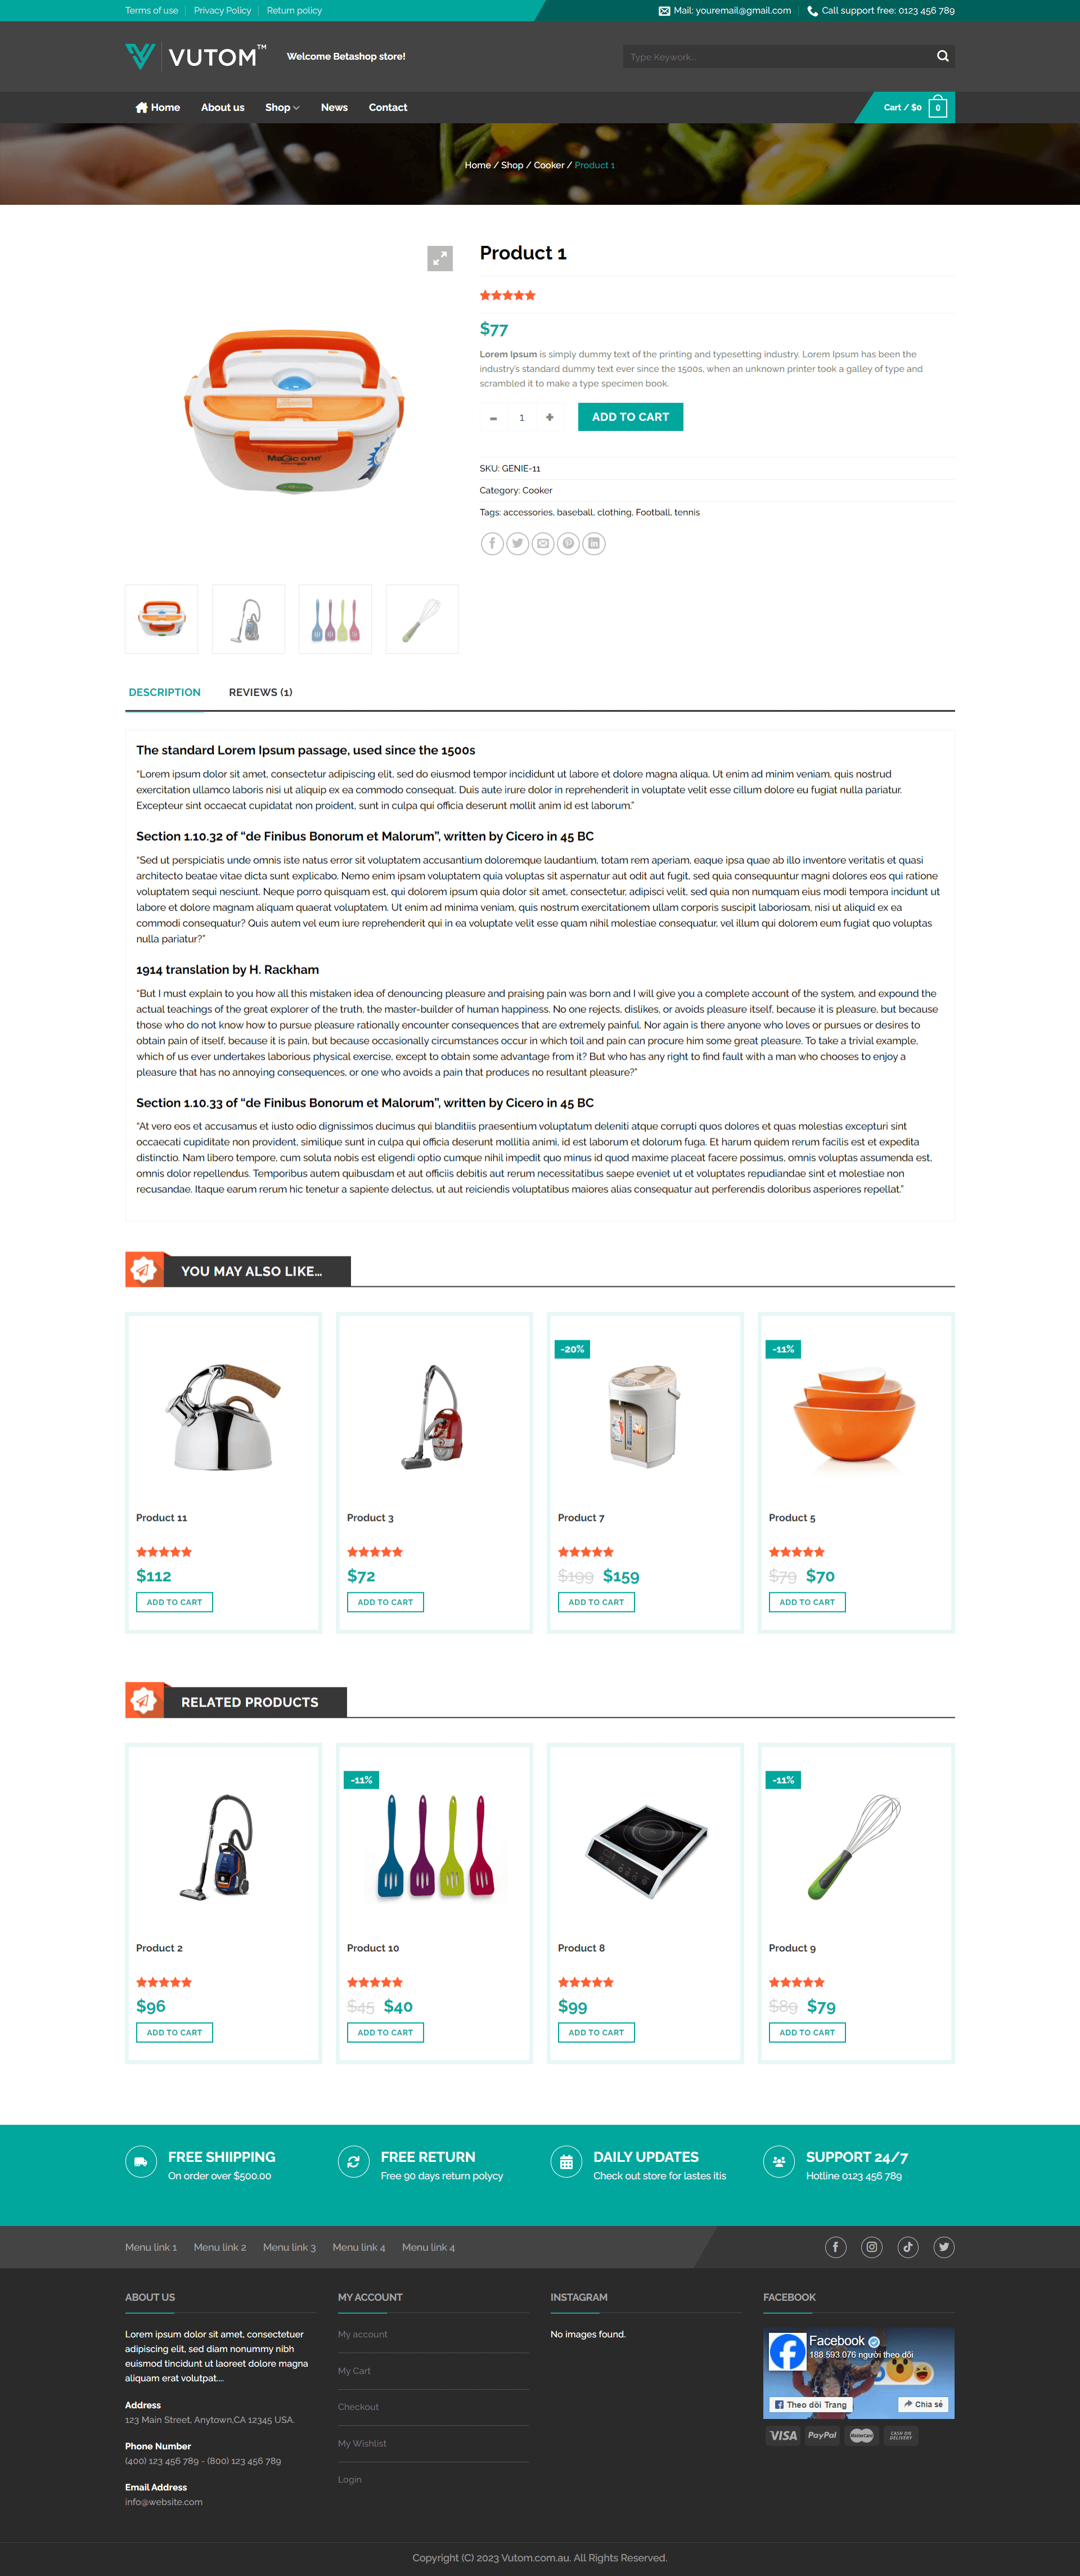 giadung.danhhd.com - single product